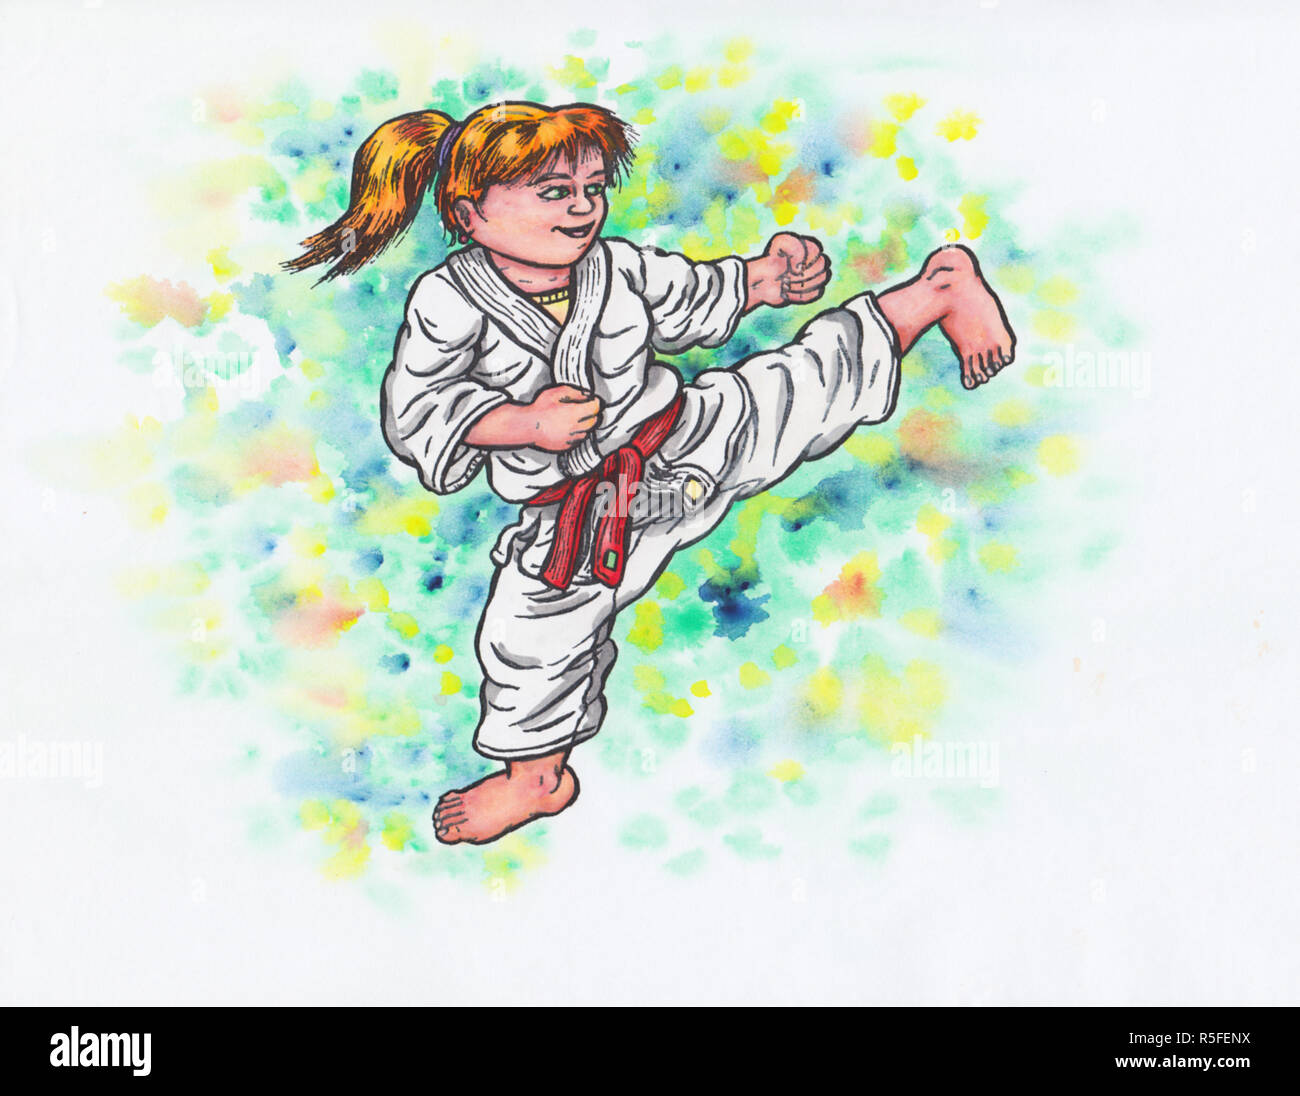 Un abstract acquerello colorato cartoon illustrazione di una giovane ragazza che indossa una tuta di karate, sorridente felicemente e facendo un kick l'intera immagine è disegnata a mano con inchiostro e colorati con acquarello e la sfocatura è destinato e una parte di esso. Foto Stock